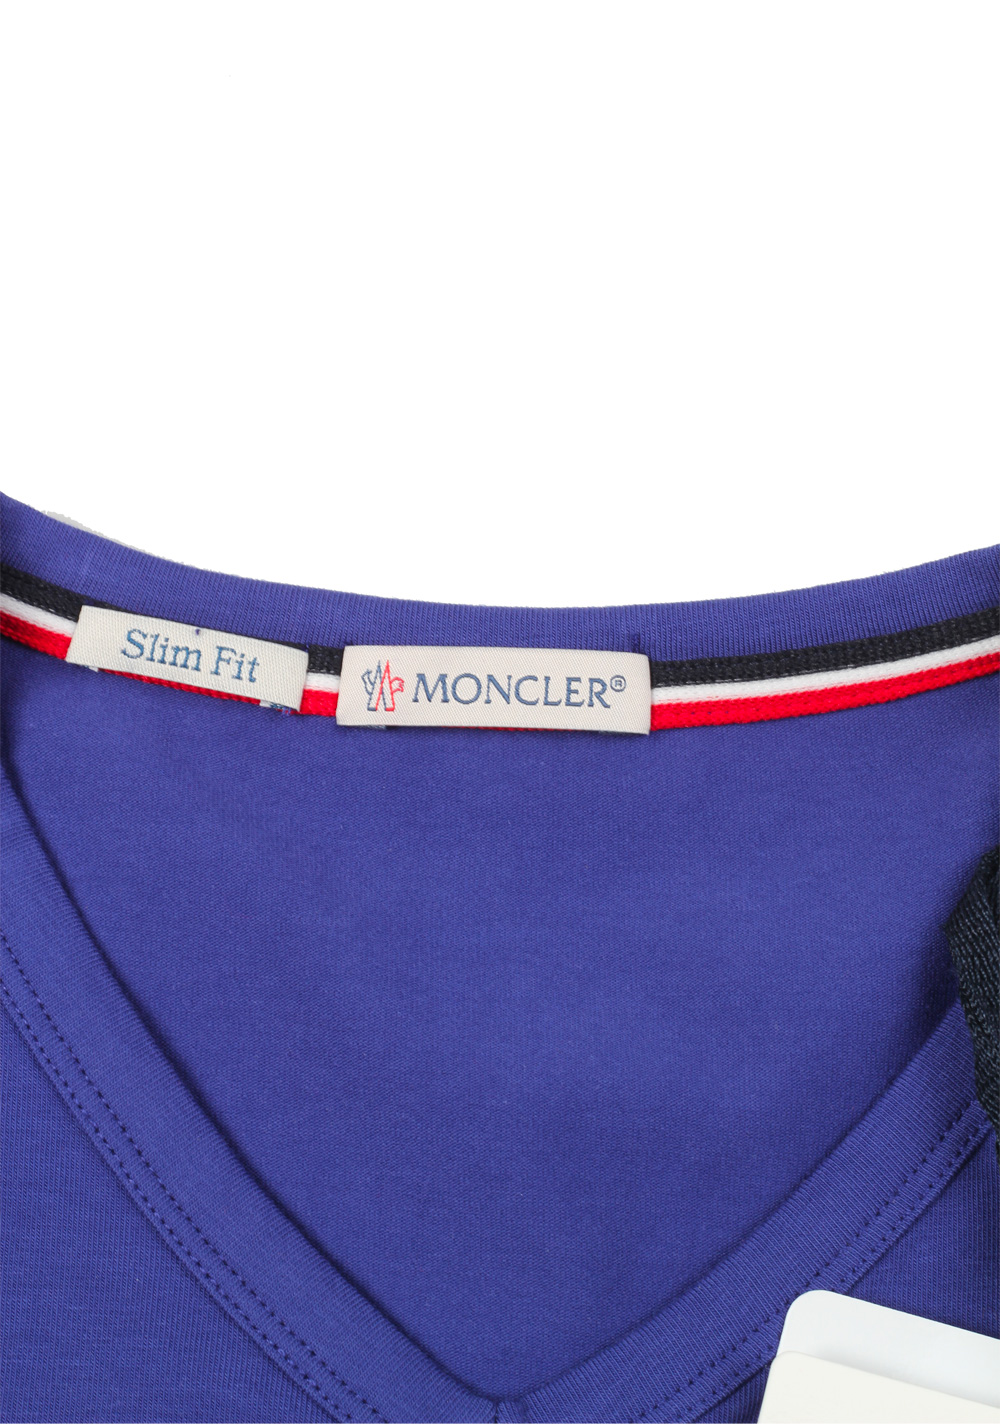 Moncler Lilac V Neck Tee Shirt Size M / 38R U.S. | Costume Limité